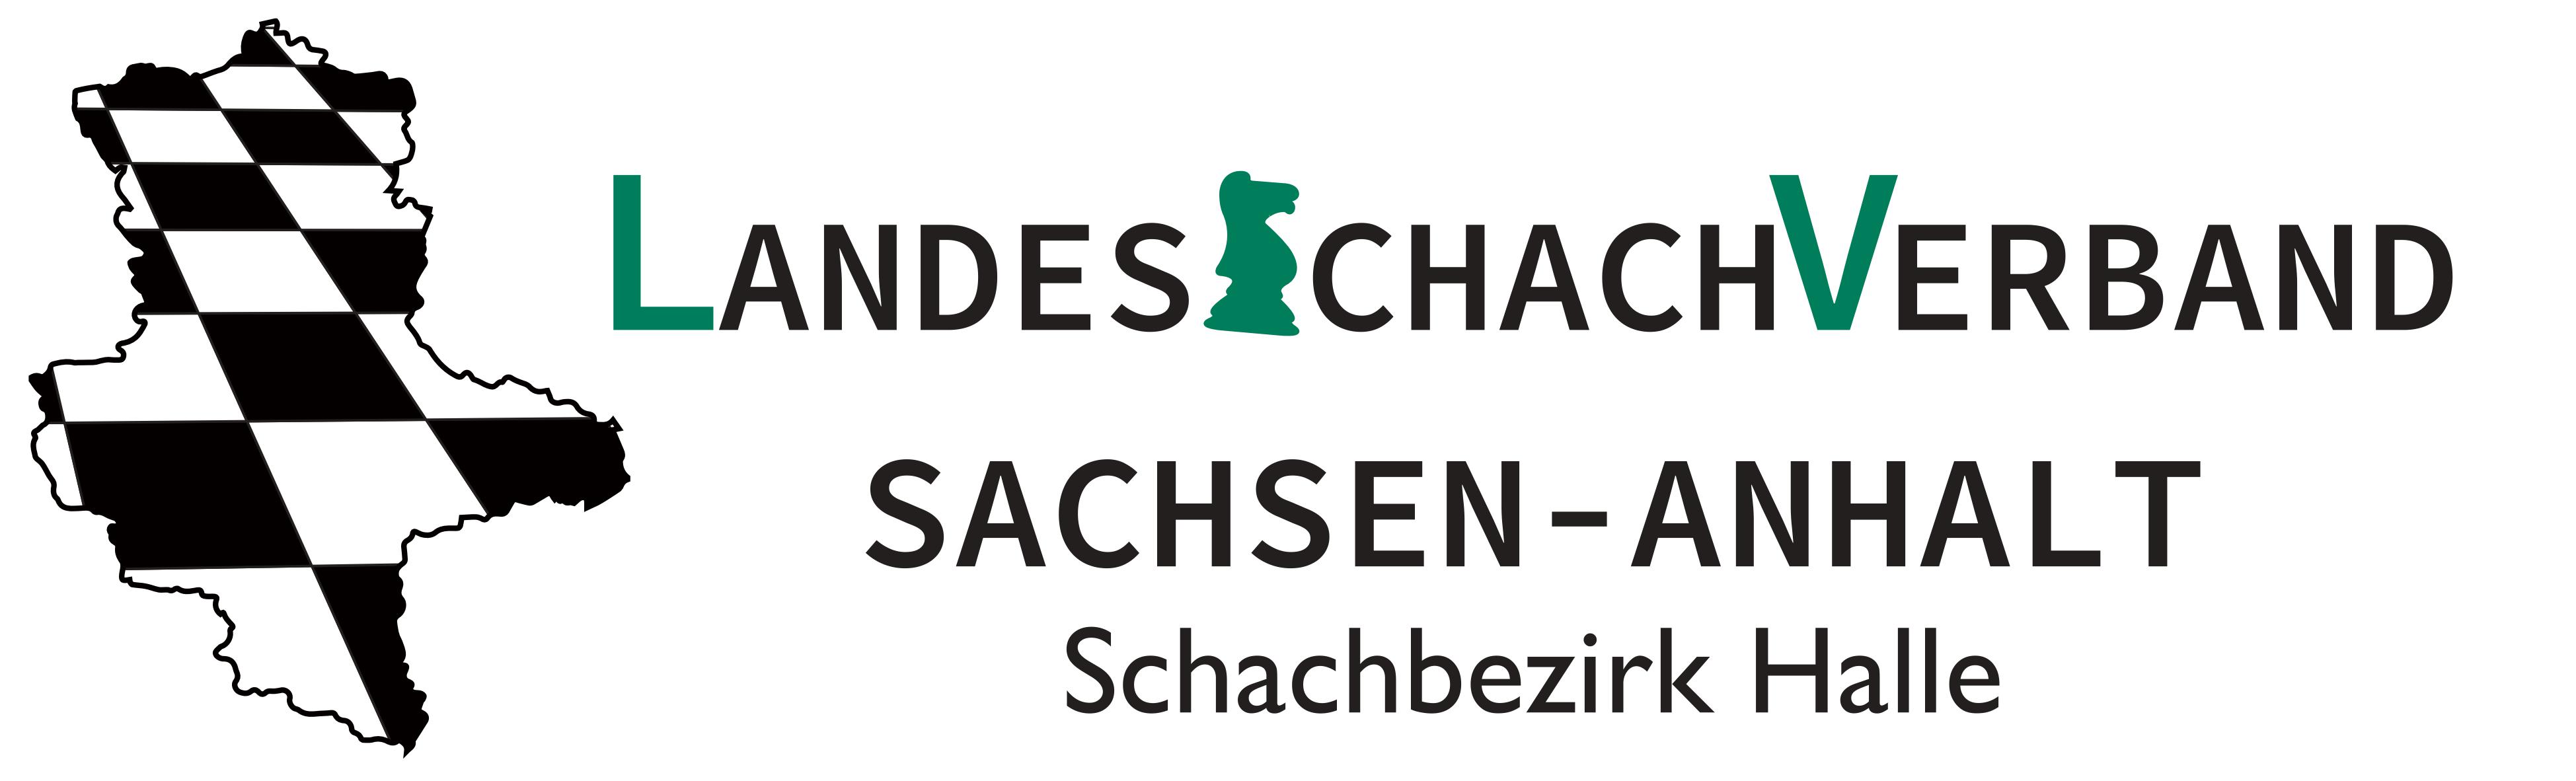 Schachbezirk Halle